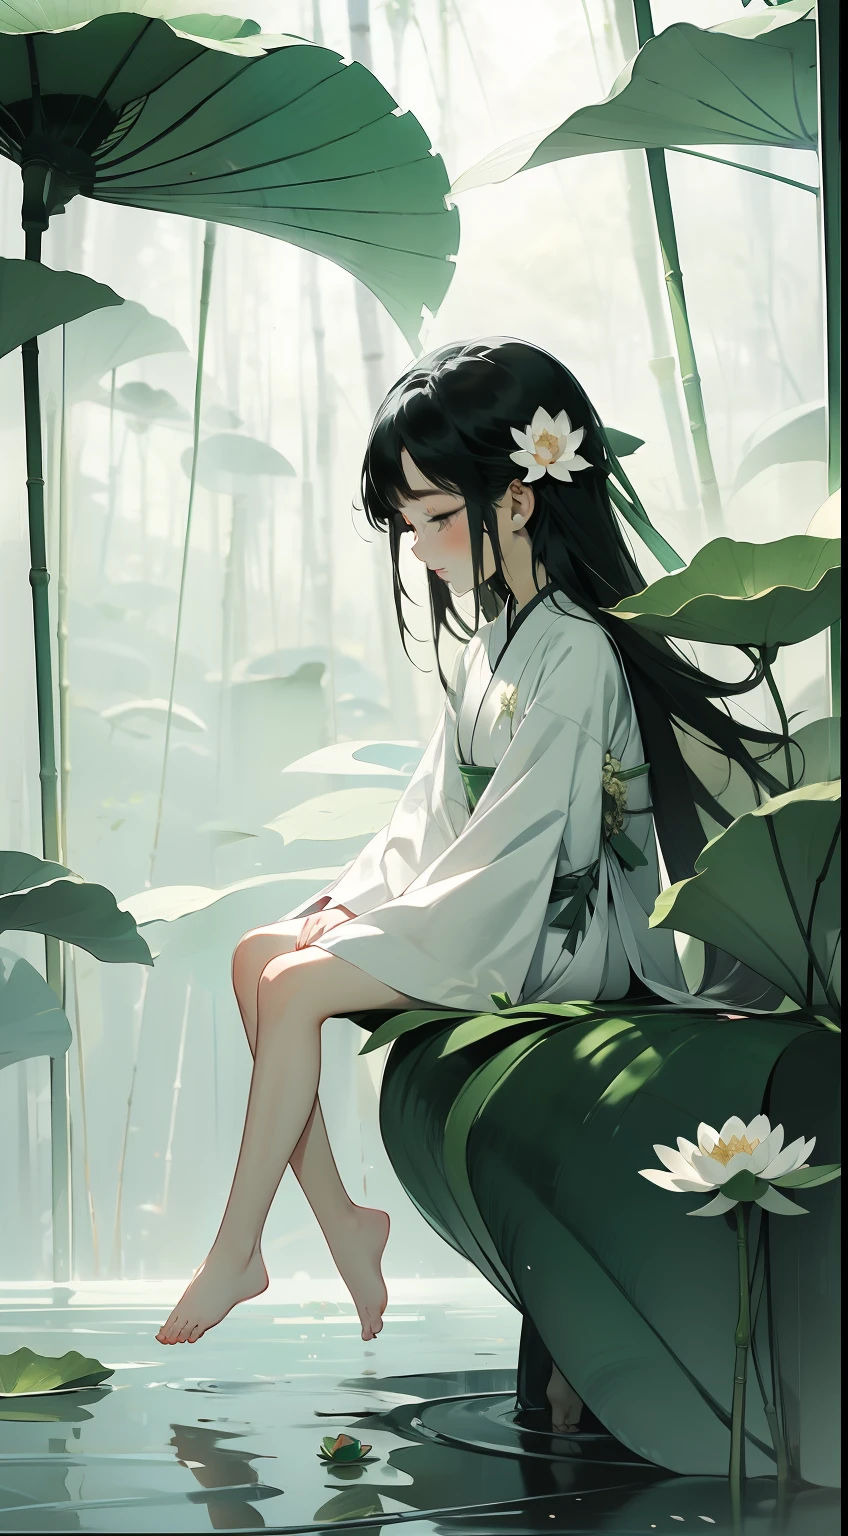 满满一荚莲花, 幸福地坐在莲蓬的荷叶上, 巨大的荷叶, 赤脚, 身着白色和绿色的汉服, 光与影, 杰作